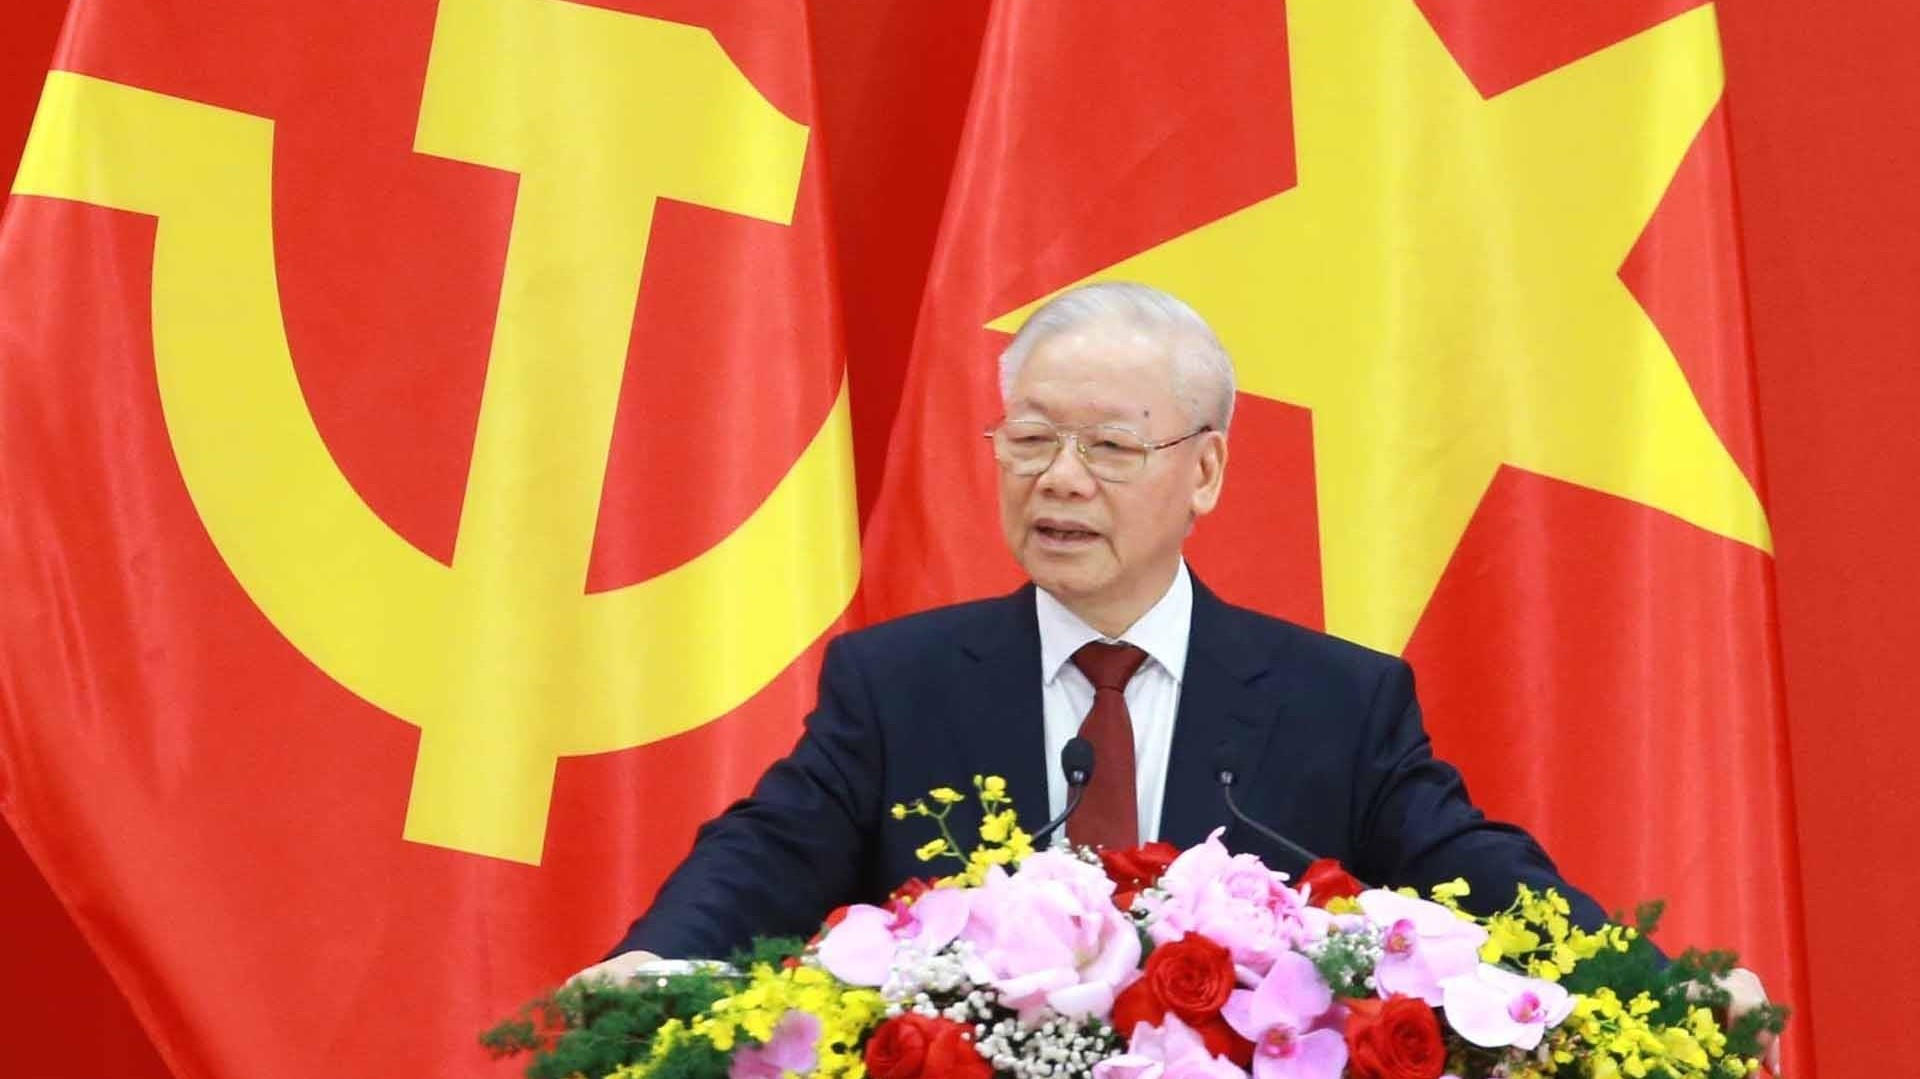 Phát biểu của Tổng Bí thư Nguyễn Phú Trọng tại buổi Gặp gỡ nhân sĩ hữu nghị và thế hệ trẻ hai nước Việt Nam-Trung Quốc